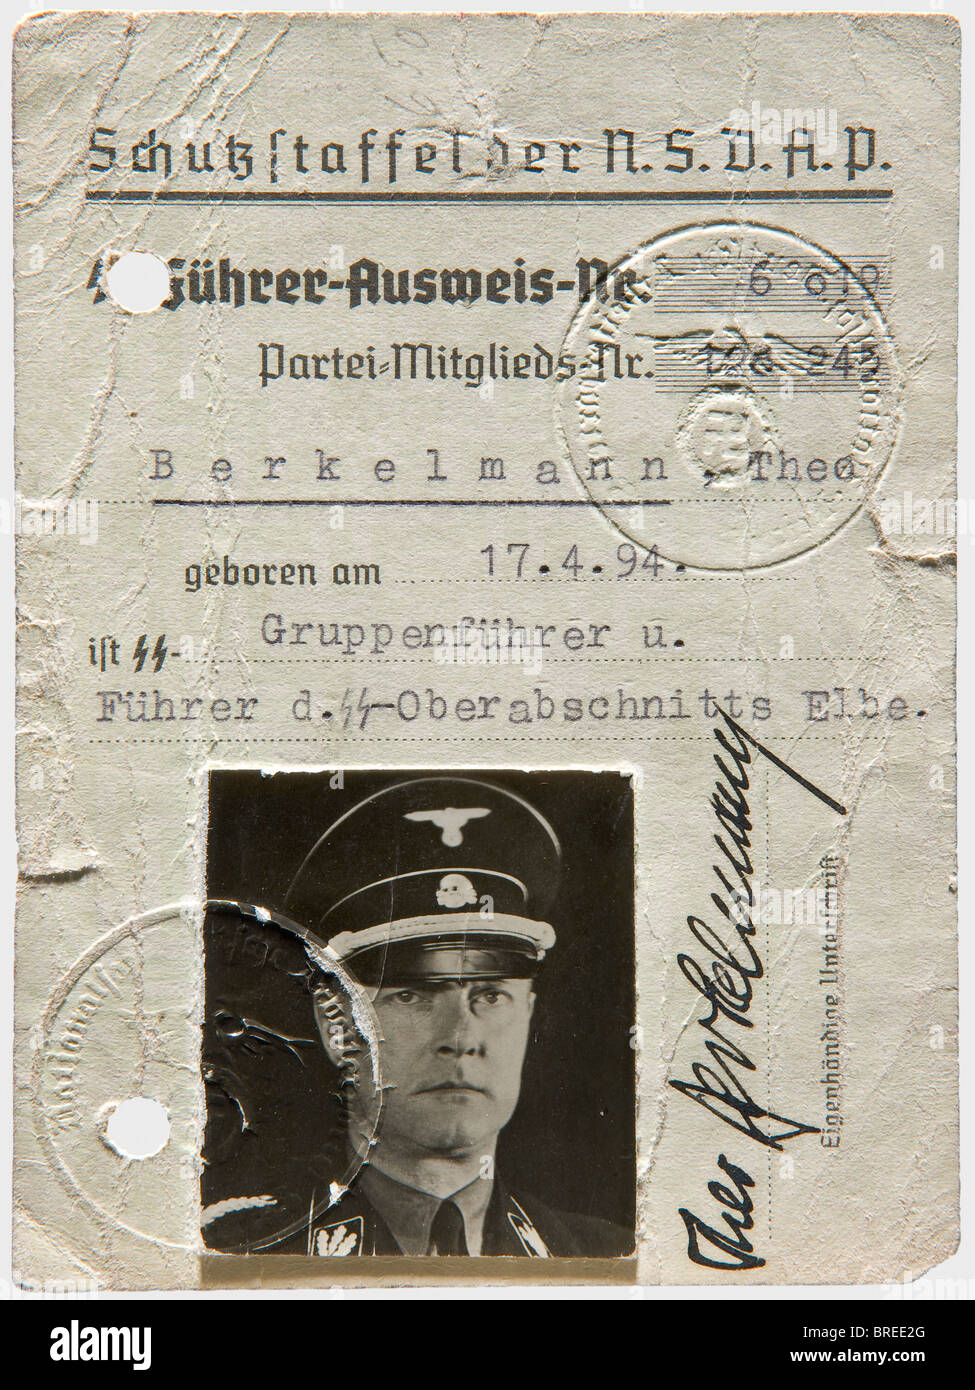 Theodor Berkelmann (1894 - 1943), sein Personalausweis für SS-Führer Personalausweis mit der Nummer '6019' und die Parteiennummer '128245' für den Gruppenführer des oberen Elbbezirks. Mit Foto und Unterschrift. Rückseite rot gestempelt für die Lizenz zum tragen einer Handfeuerwaffe und einer Faksimile-Unterschrift Himmlers. Verlöcherte, kleine Tränen. Theodor Berkelmann wurde 1929 Parteimitglied und Reichstags-Delegat, zeitweise war er Adjutant Himmlers. Sein letzter Dienstgrad war Obergruppenführer (Oberleutnant) und General der Polizei. Er starb 1943 an einem Hirntumor. Peop, Stockfoto